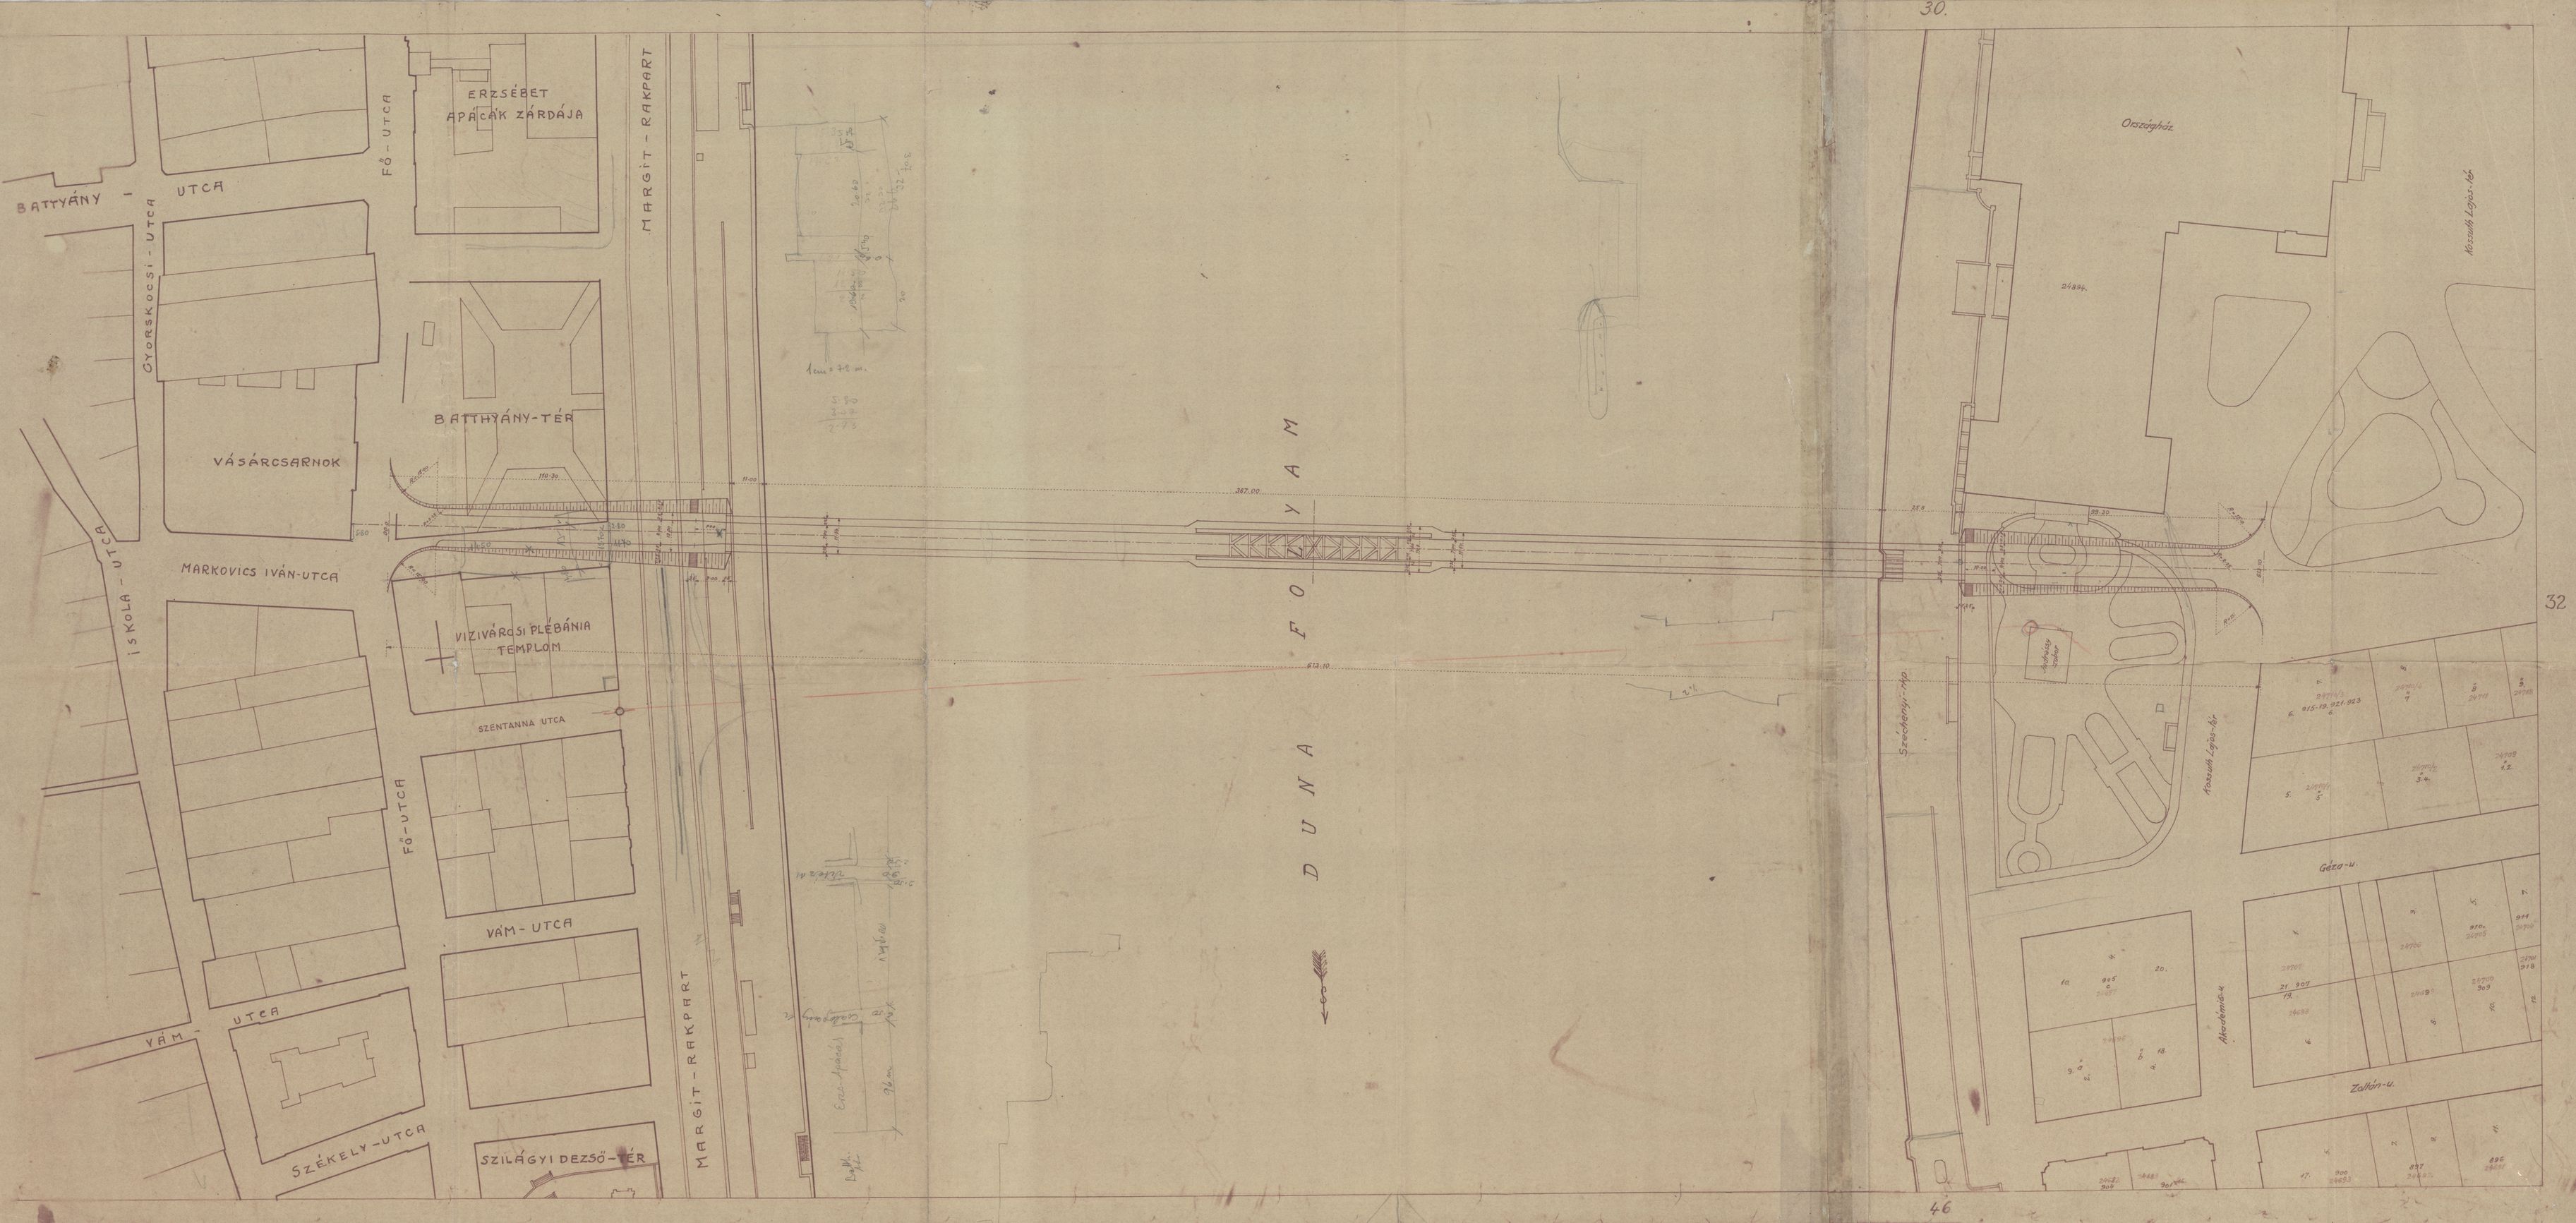 A Kossuth híd környékének rendezési terve, 1945–1946. (BFL XI.827)